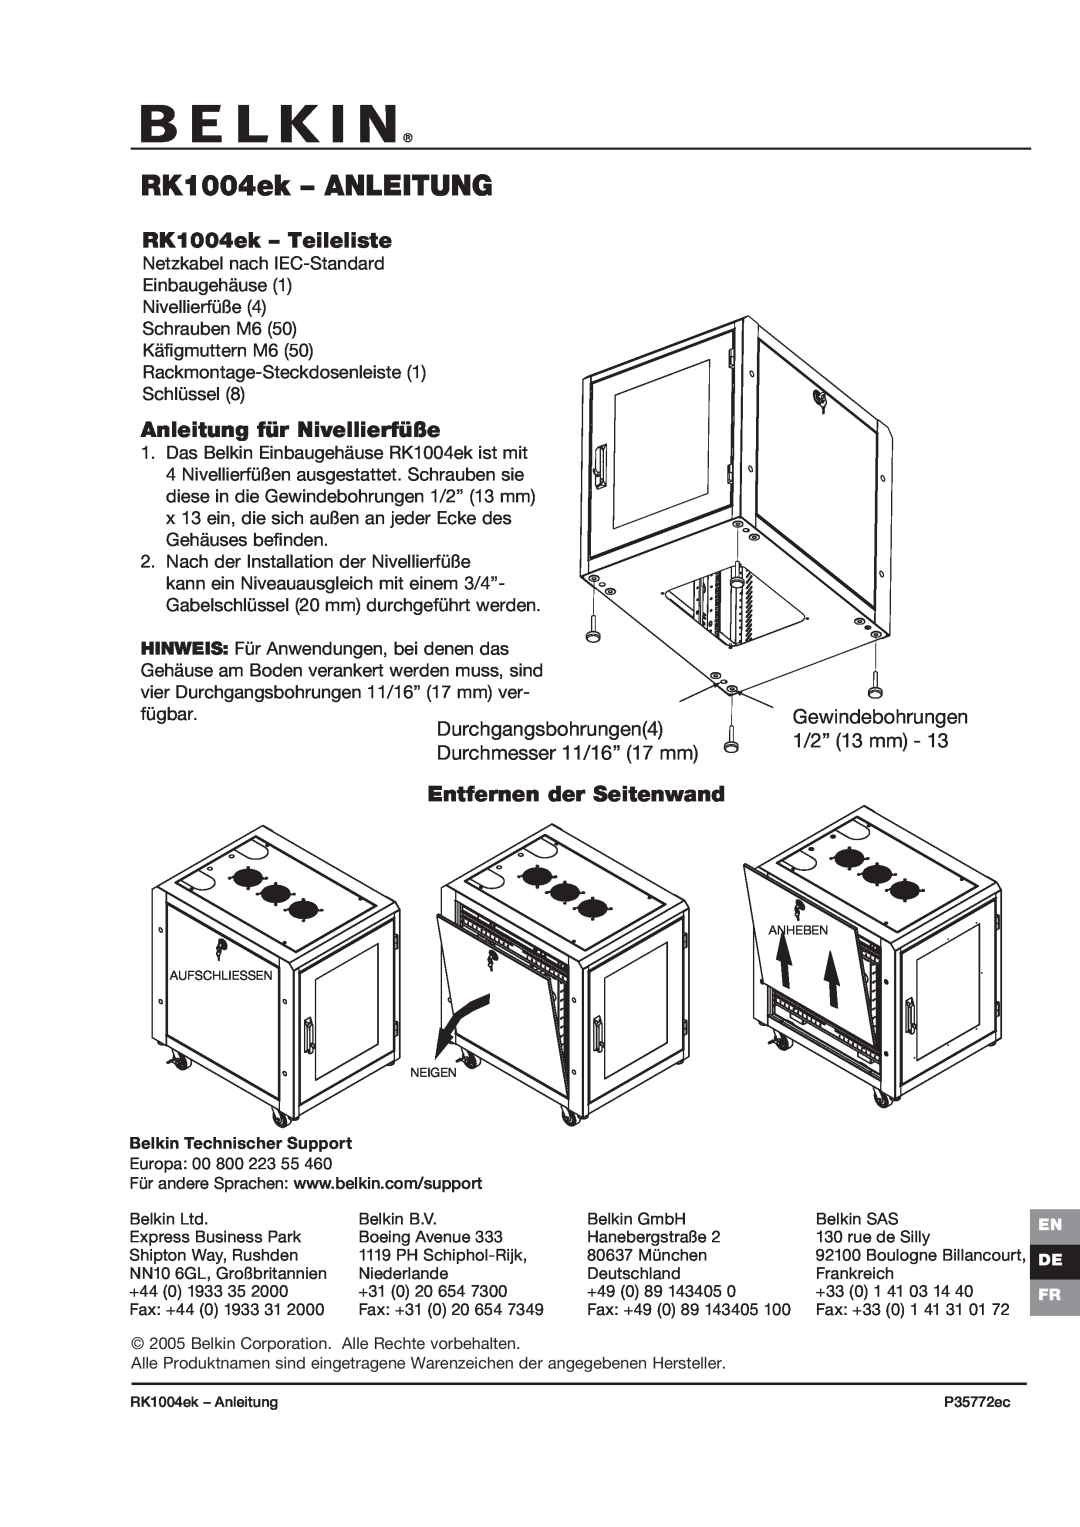 Belkin P35772ec RK1004ek - ANLEITUNG, RK1004ek - Teileliste, Anleitung für Nivellierfüße, Gewindebohrungen 1/2” 13 mm 